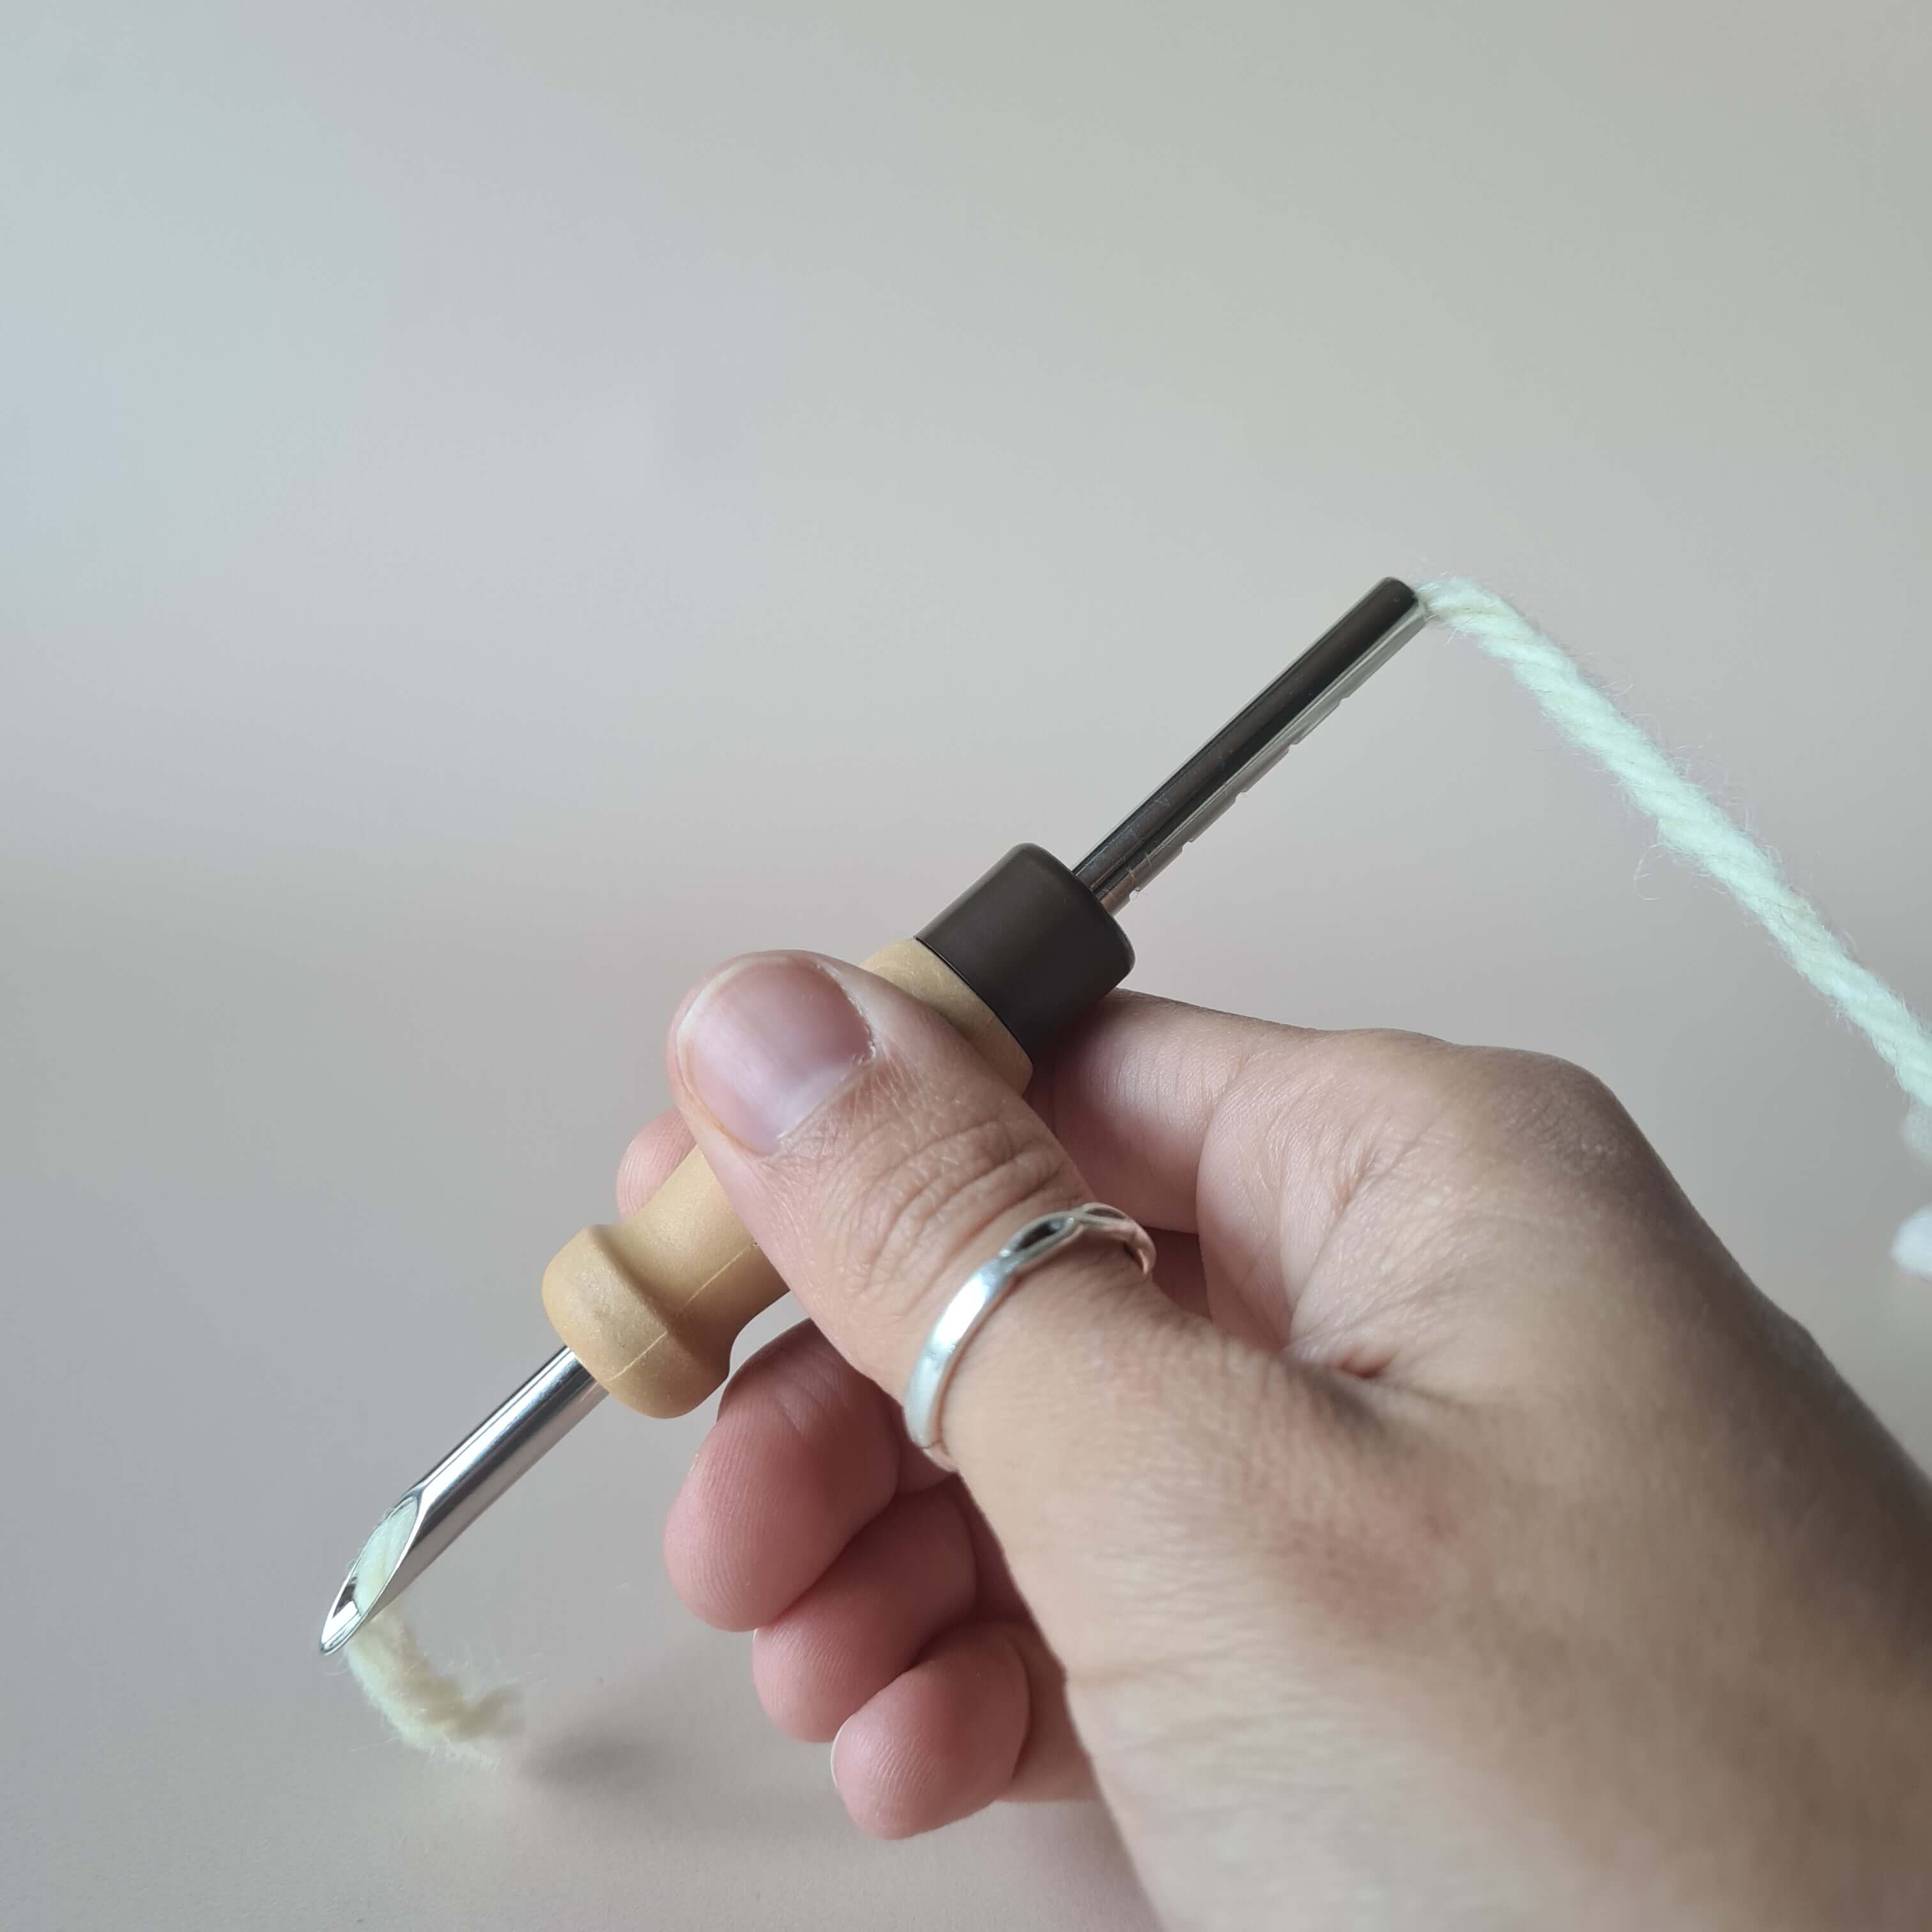 Ergonomic Lavor 5.5 mm adjustable punch needle – Whole Punching